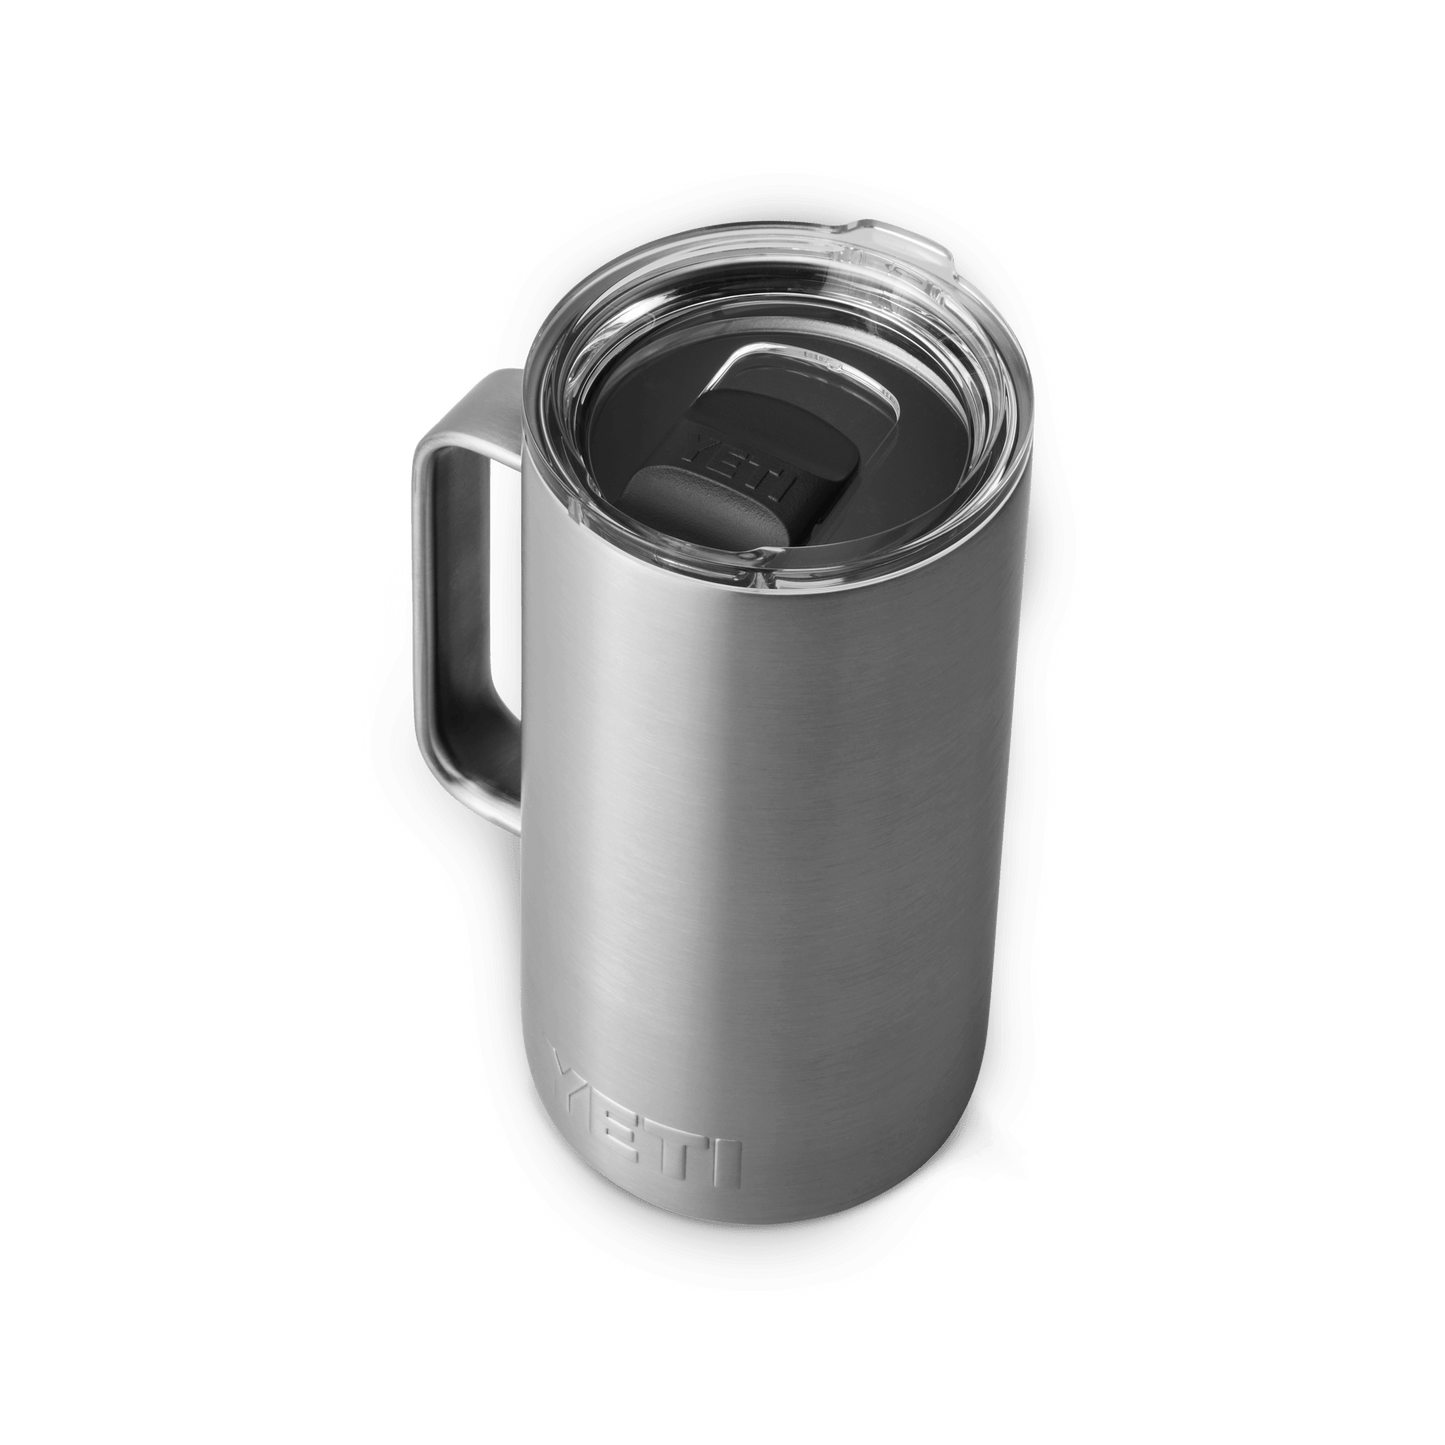 YETI Rambler® 24 oz (710 ml) Mug Stainless Steel